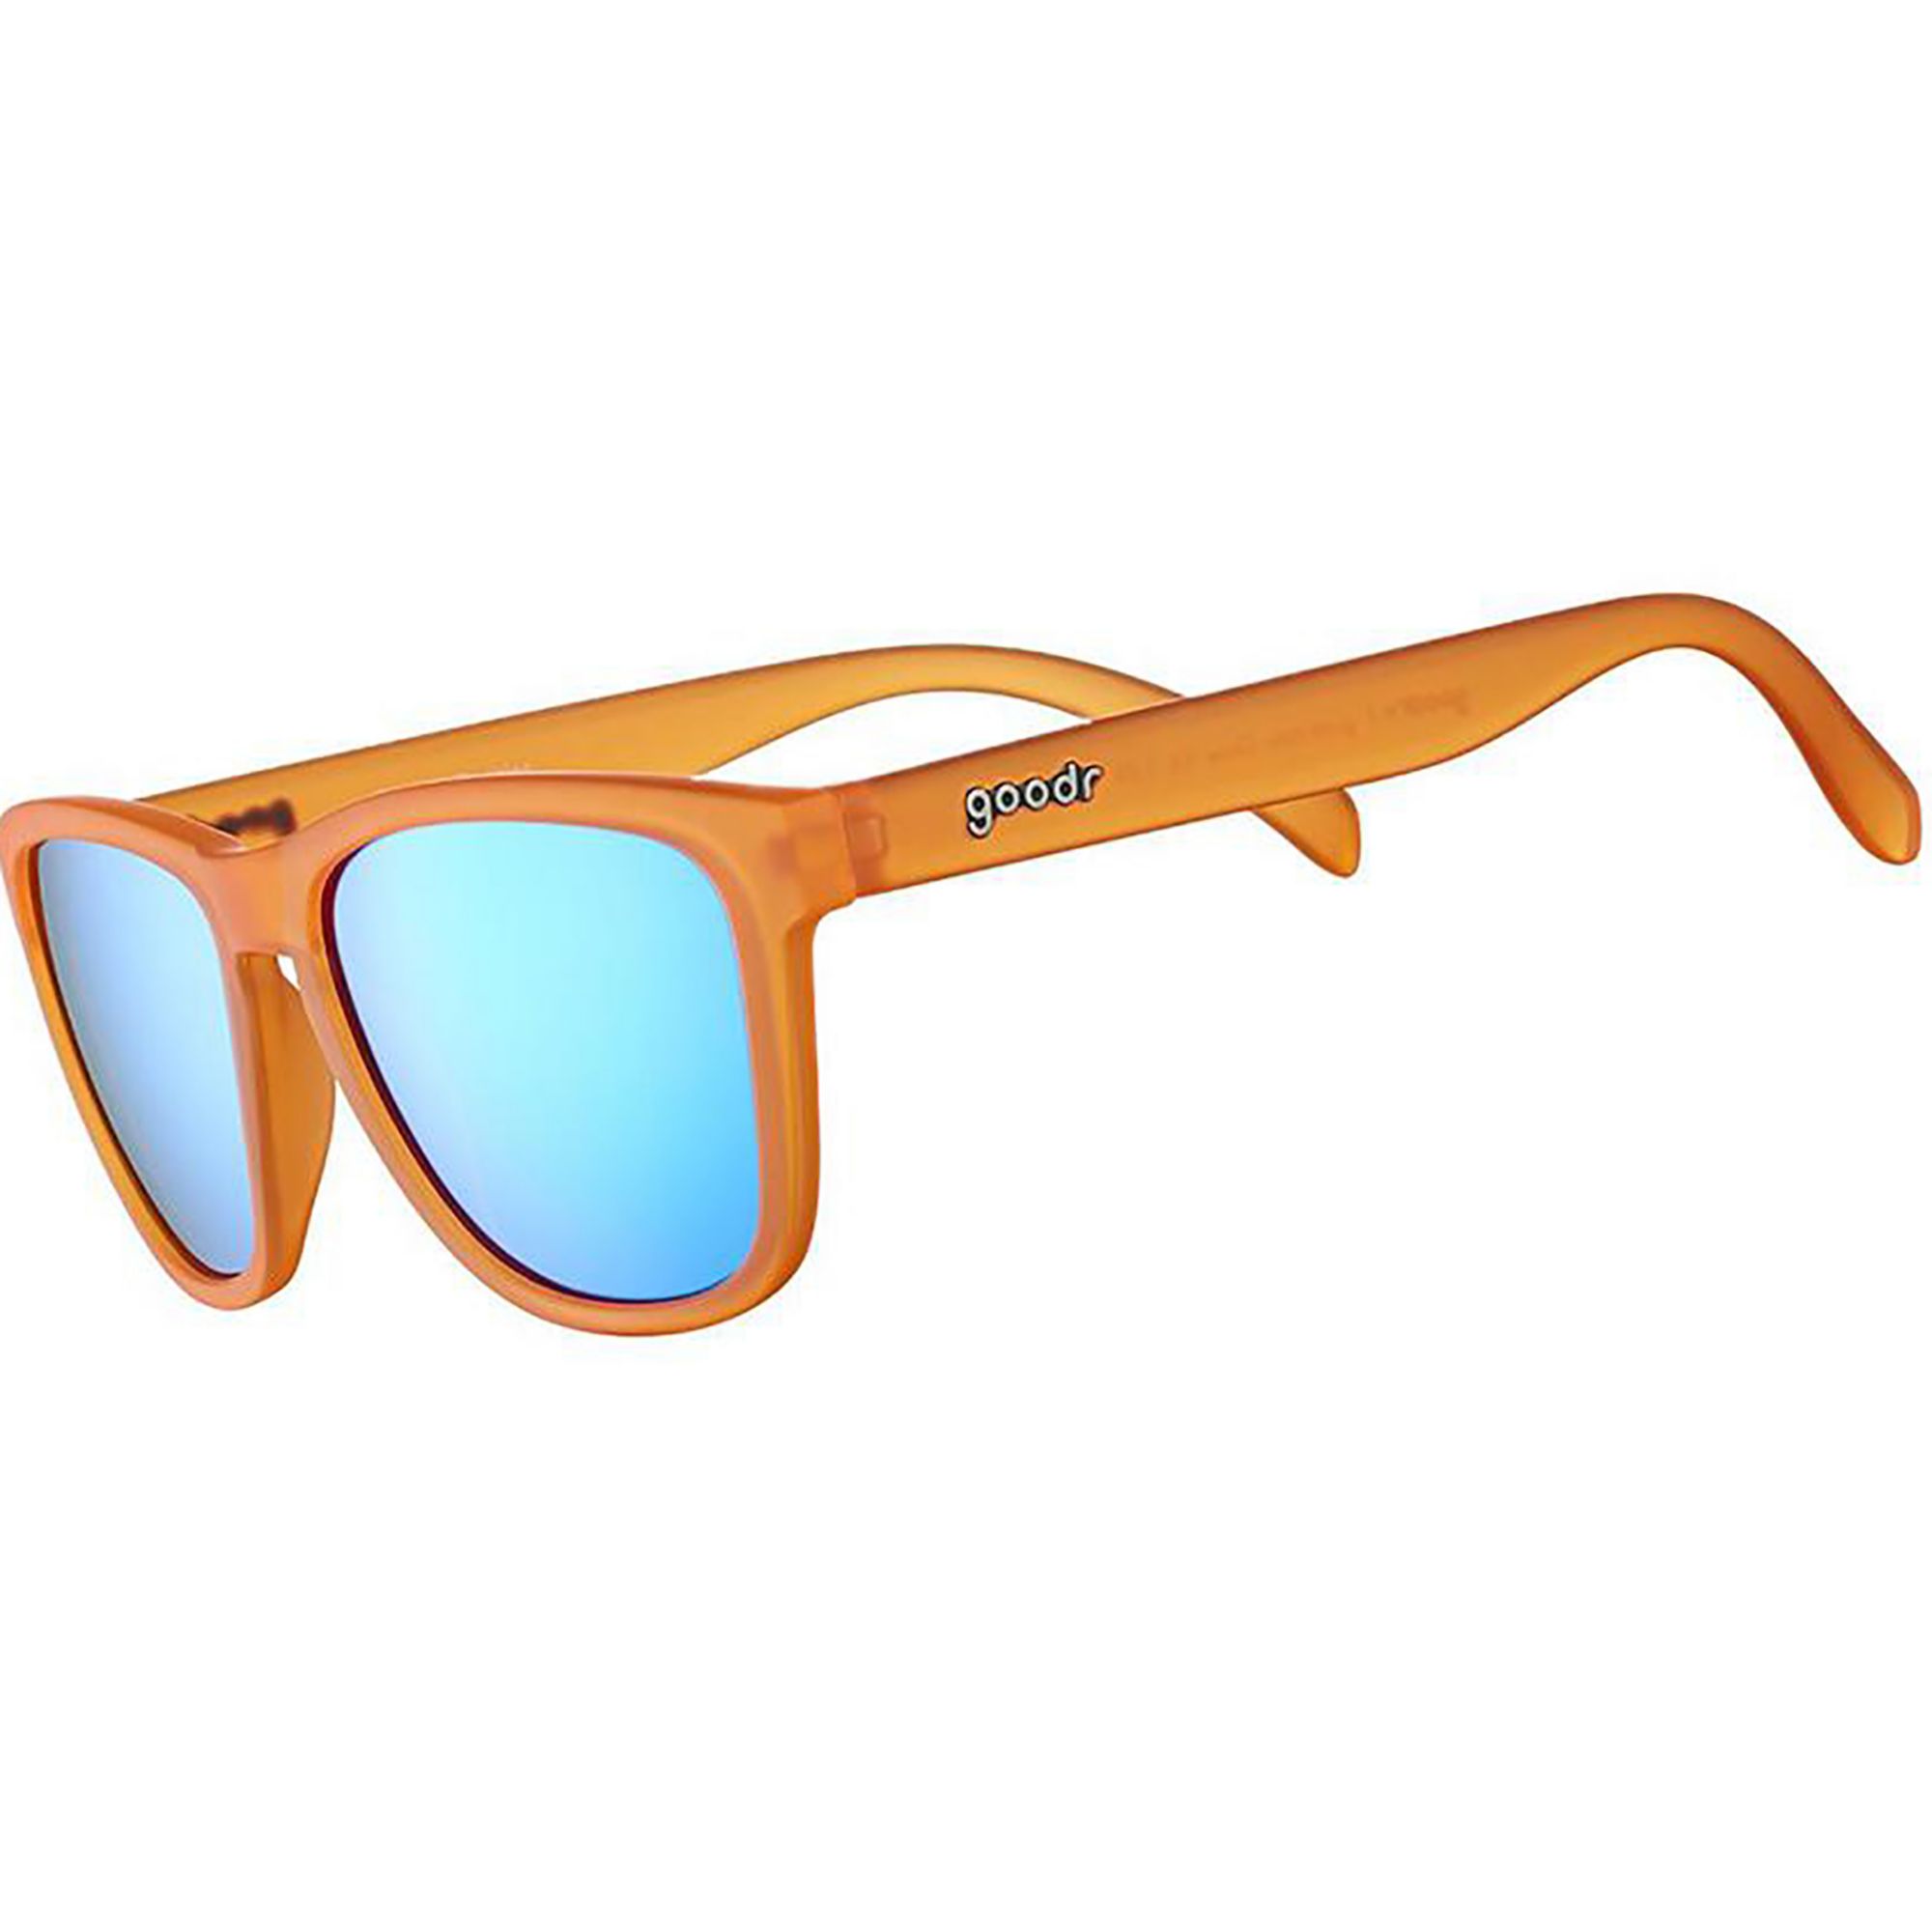 Photos - Sunglasses Goodr Donkey Goggles , Men's, Orange Frame/Blue Lens 21AVJUDNKYG